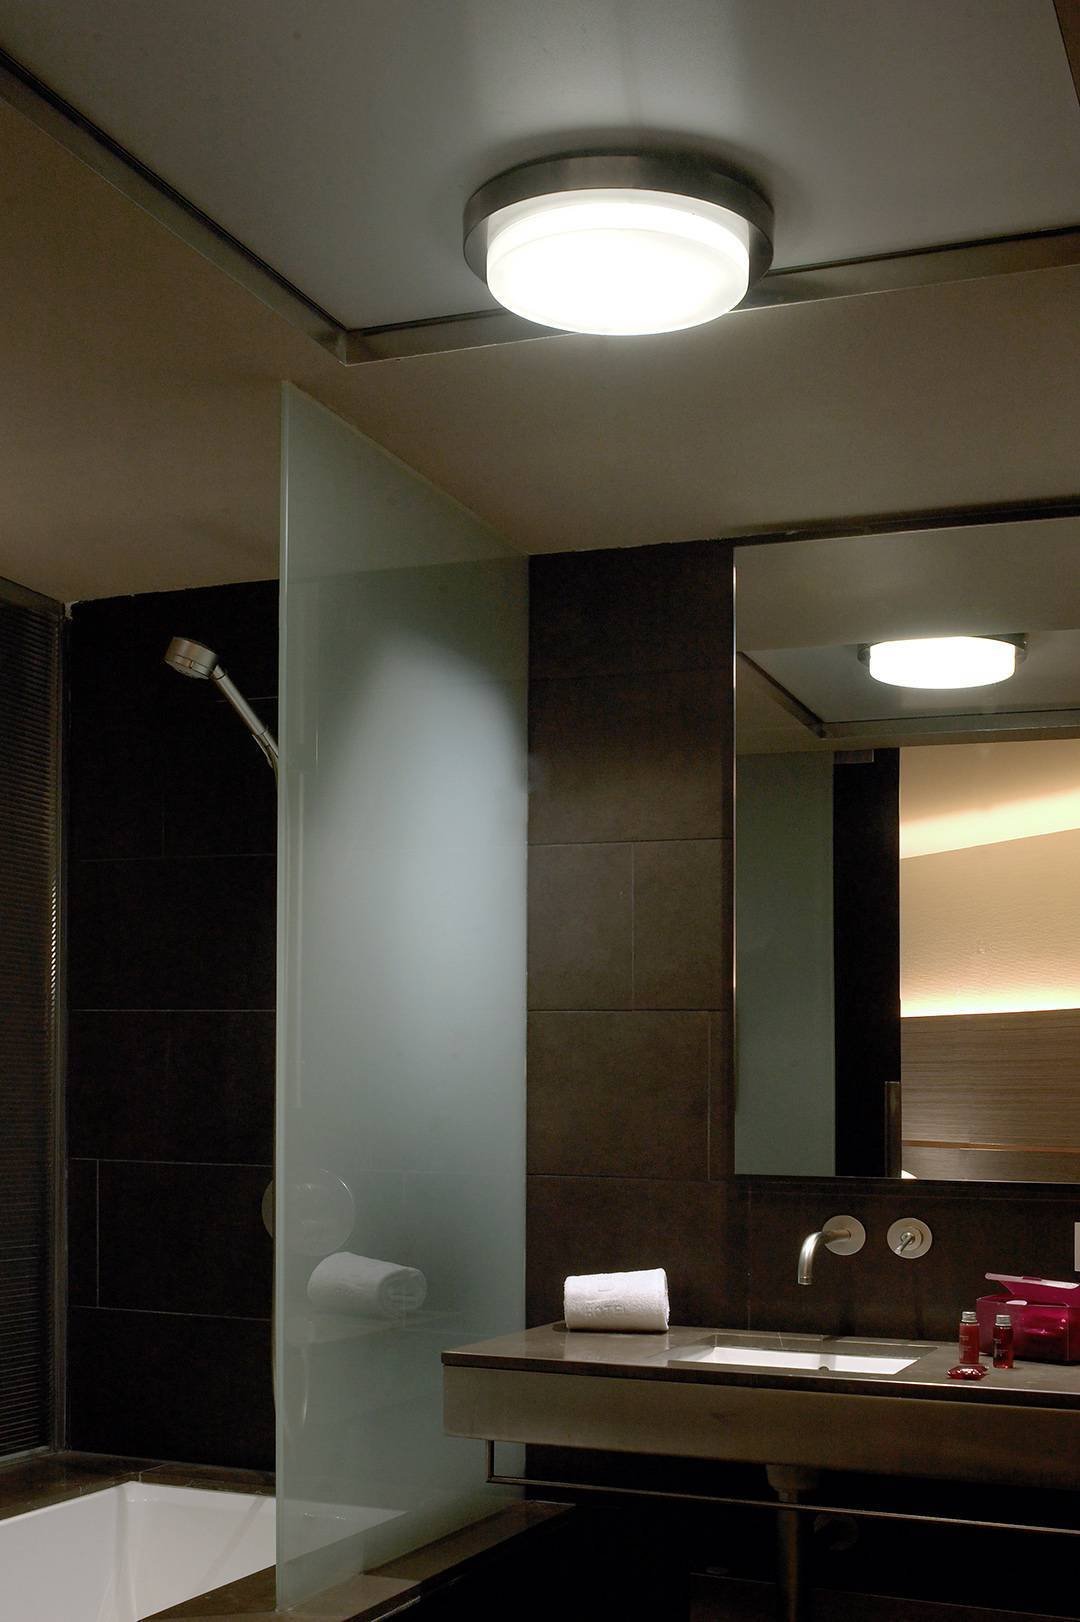 Потолочные светодиодные светильники ванна. Светильники для ванной комнаты. Светильники в ванную комнату на потолок. Освещение в ванной. Встроенные светильники для ванной.